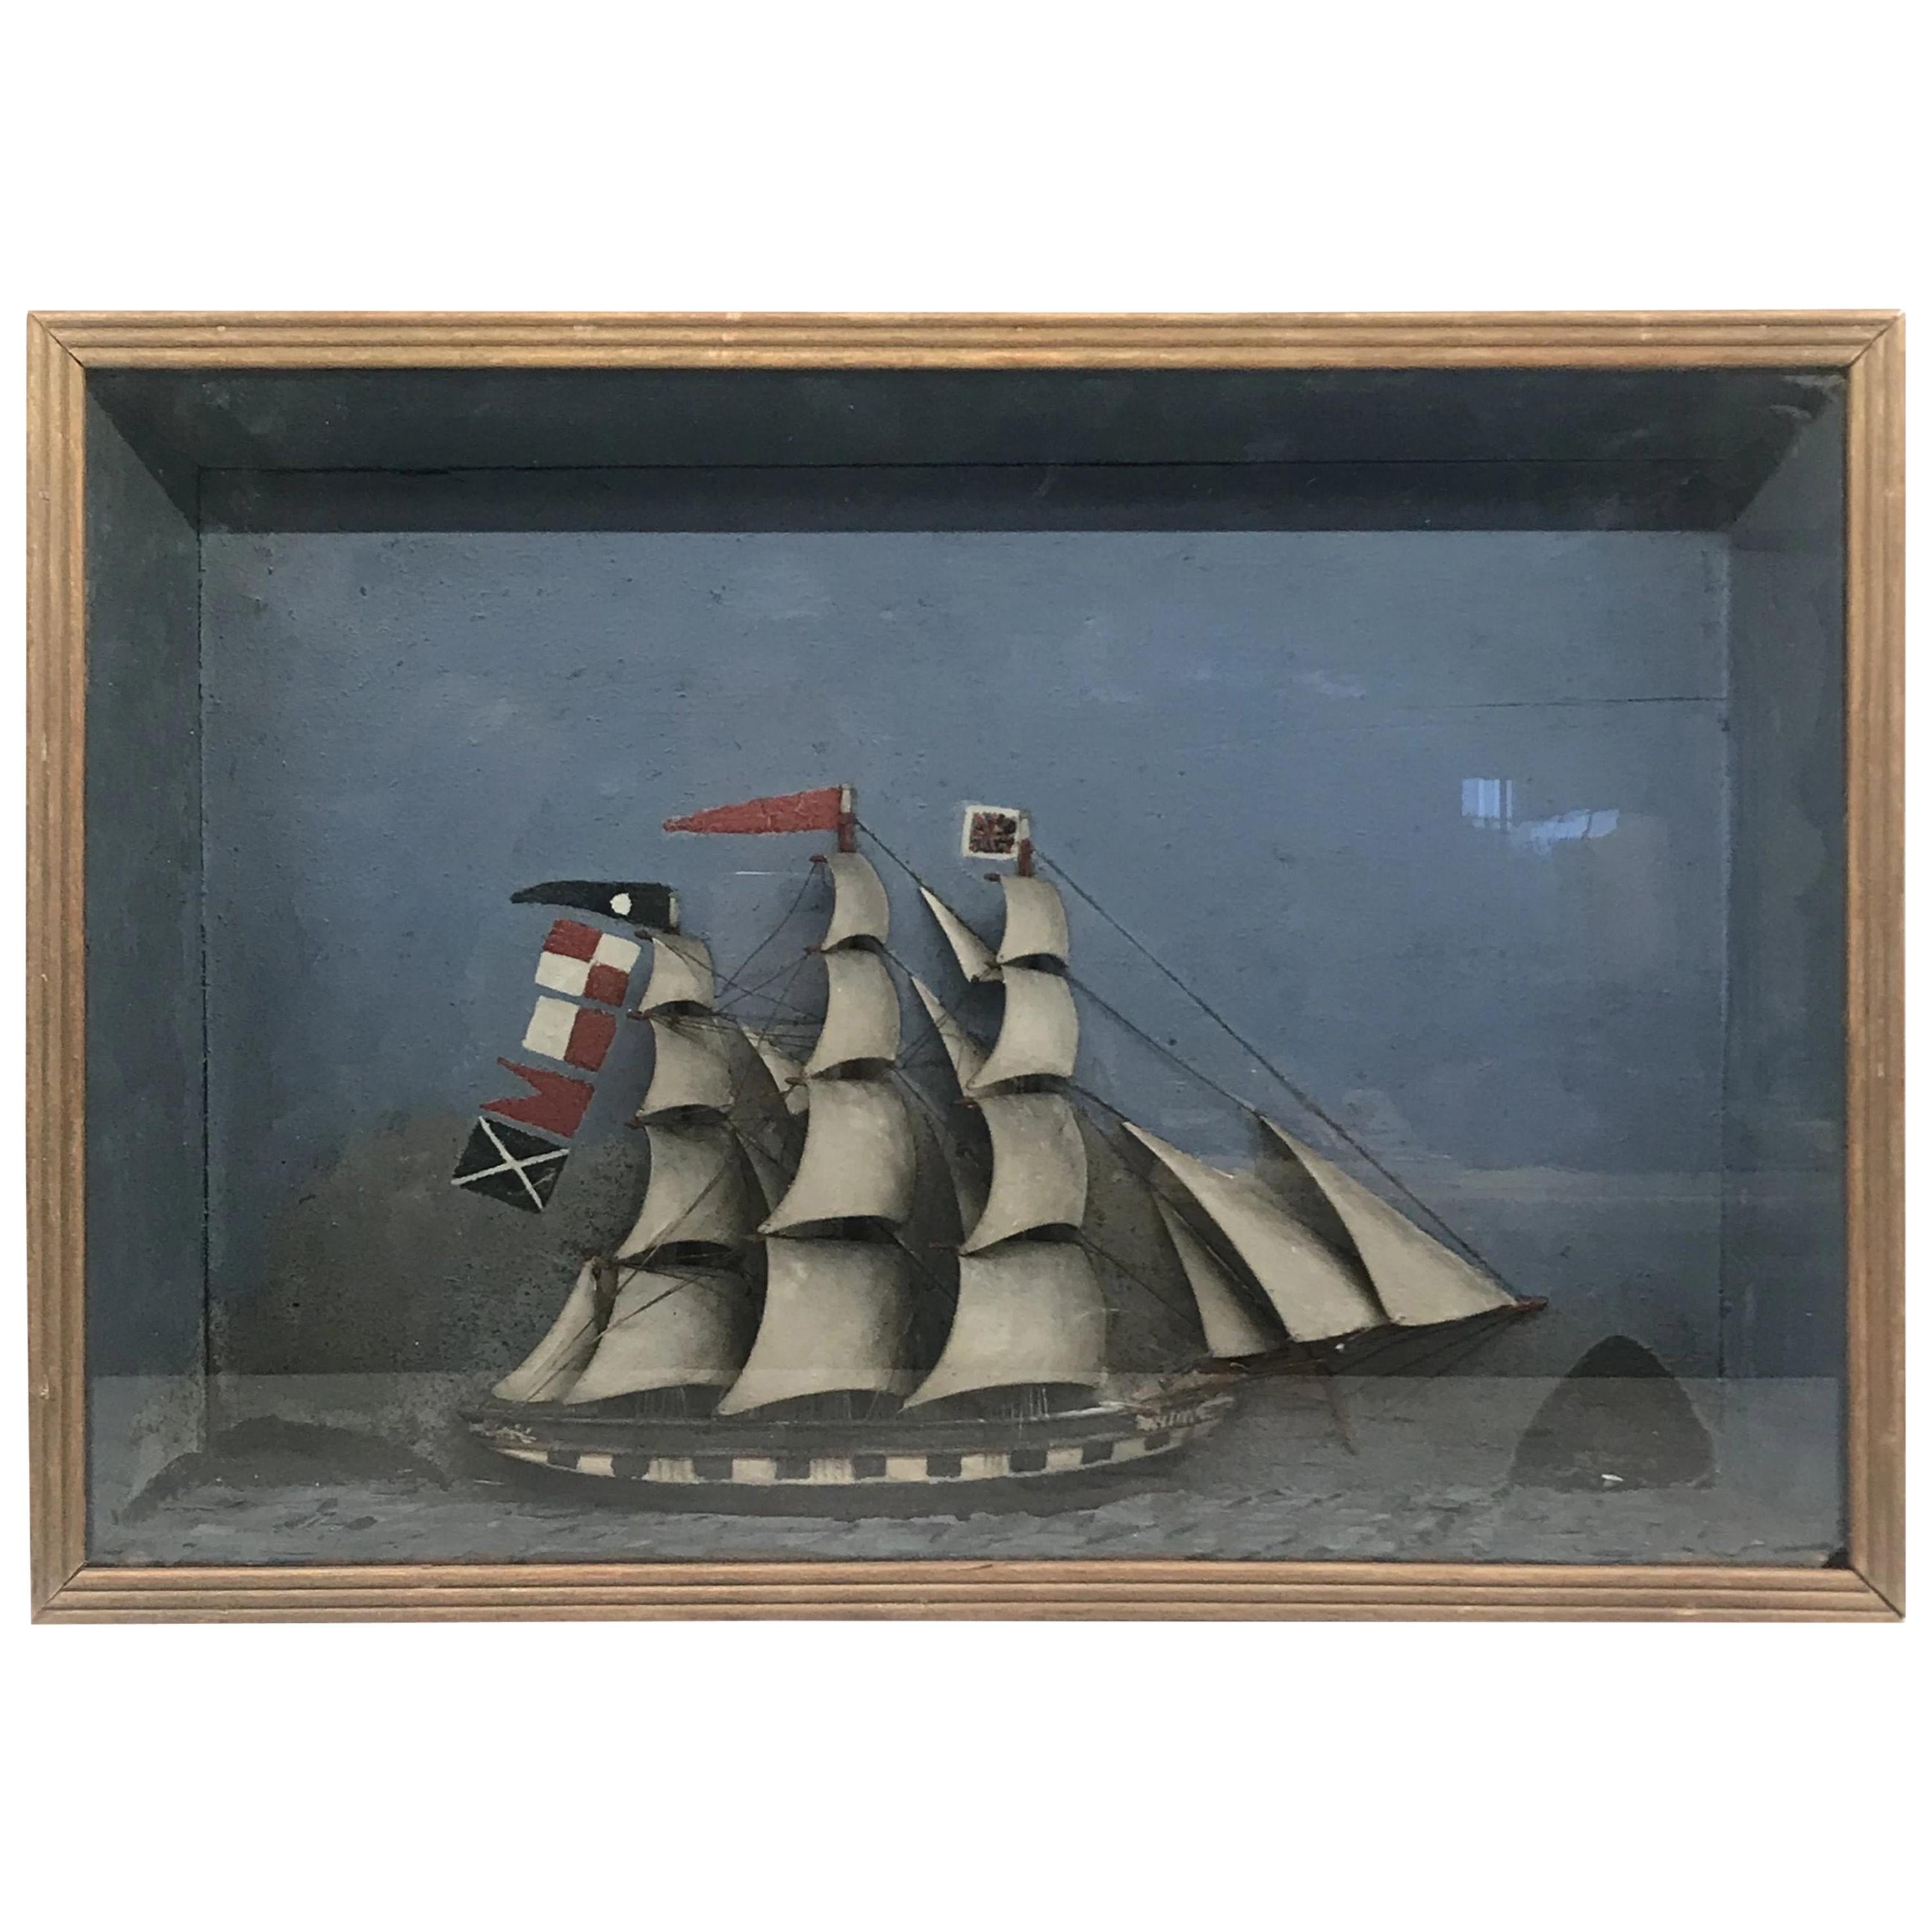 Folk Art Shadowbox Ship Diorama of a Three Masted Schooner